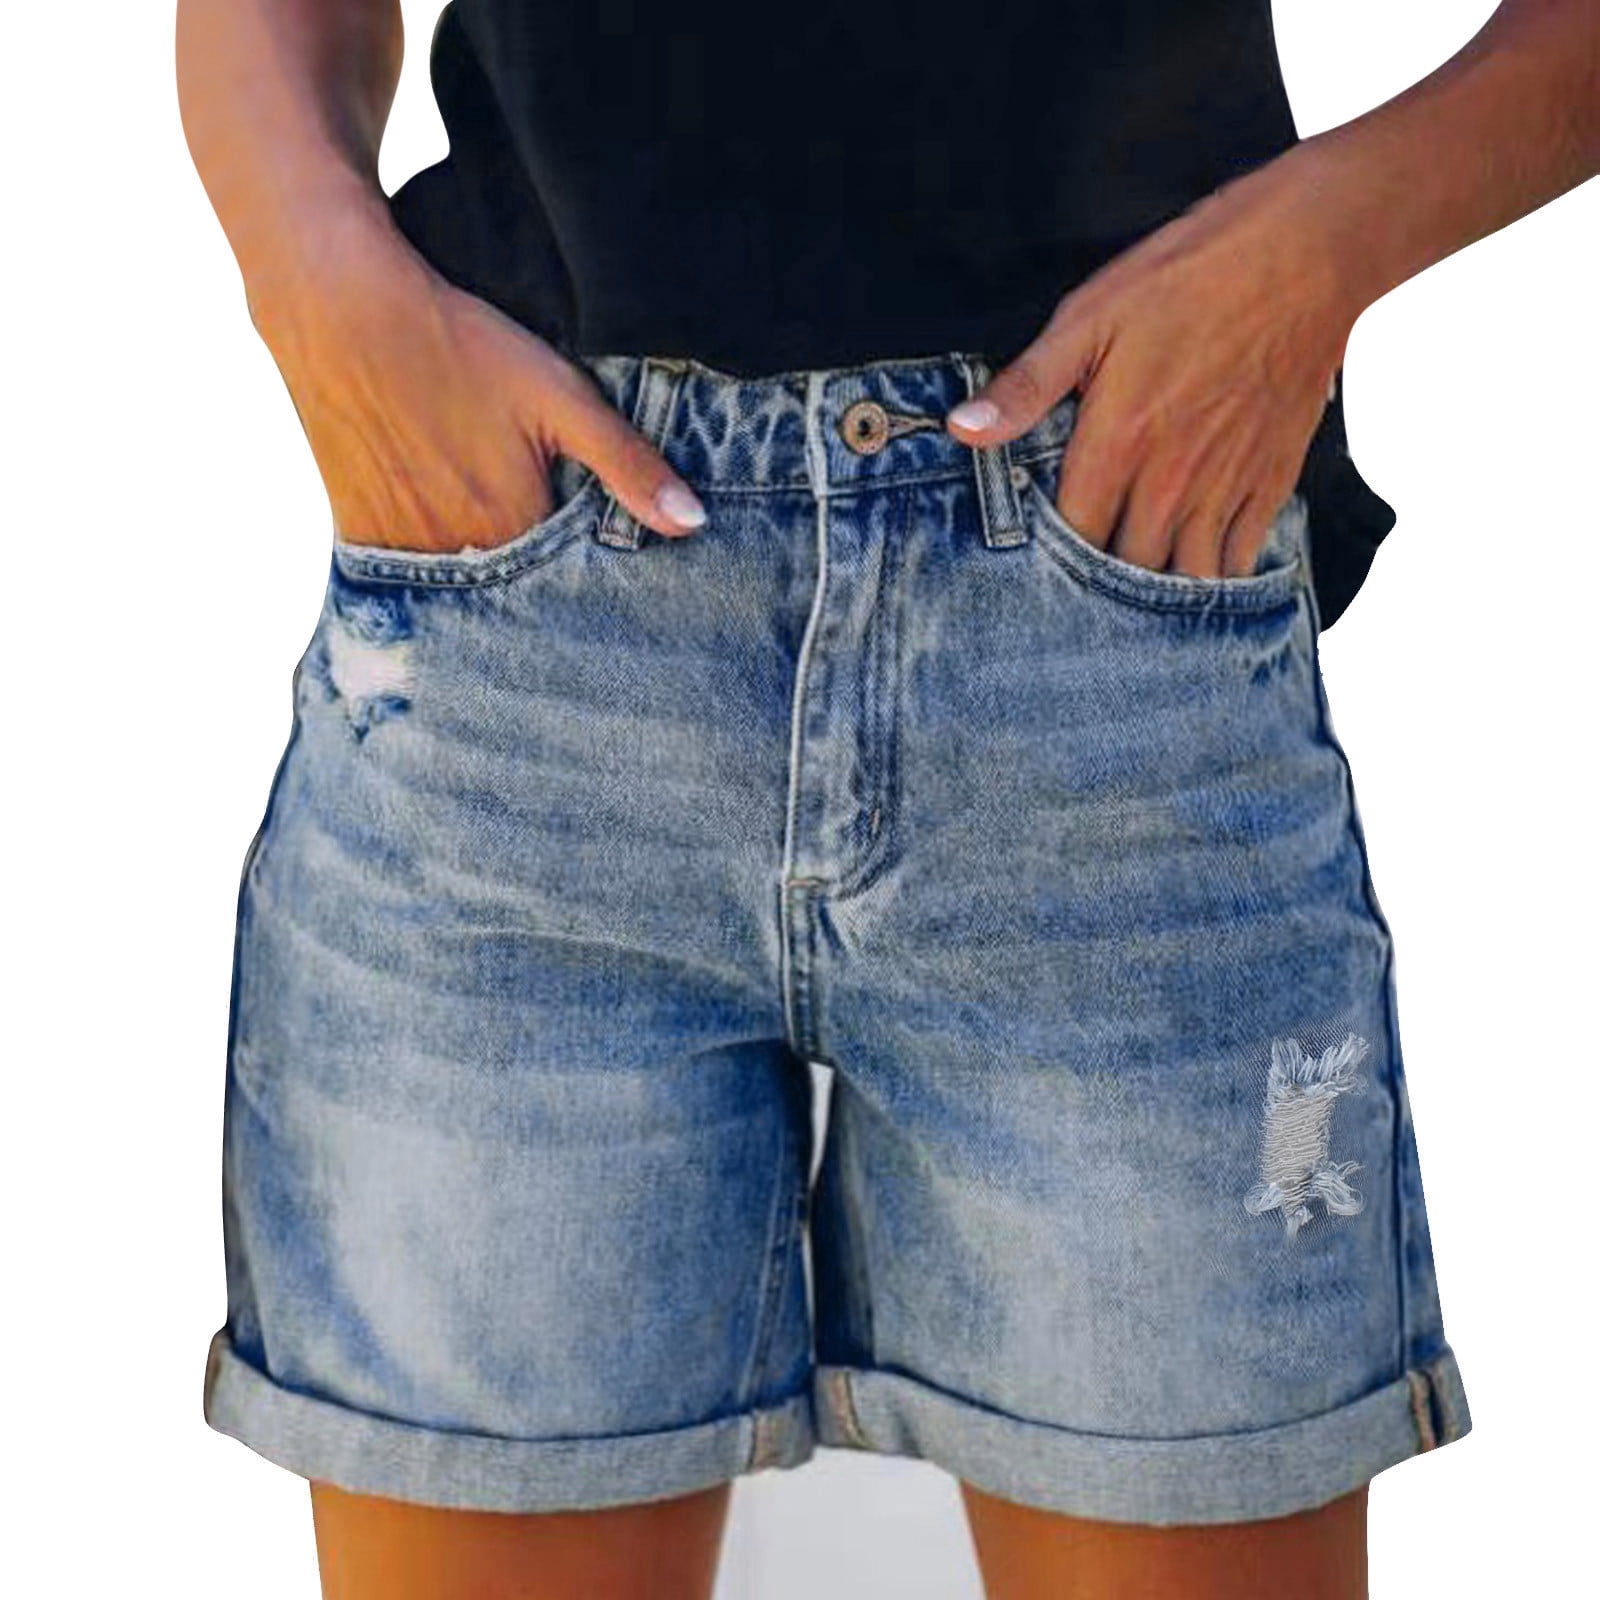 Tiqkatyck Jeans for Women, Women Summer Pants Sexy Jeans High Waist ...